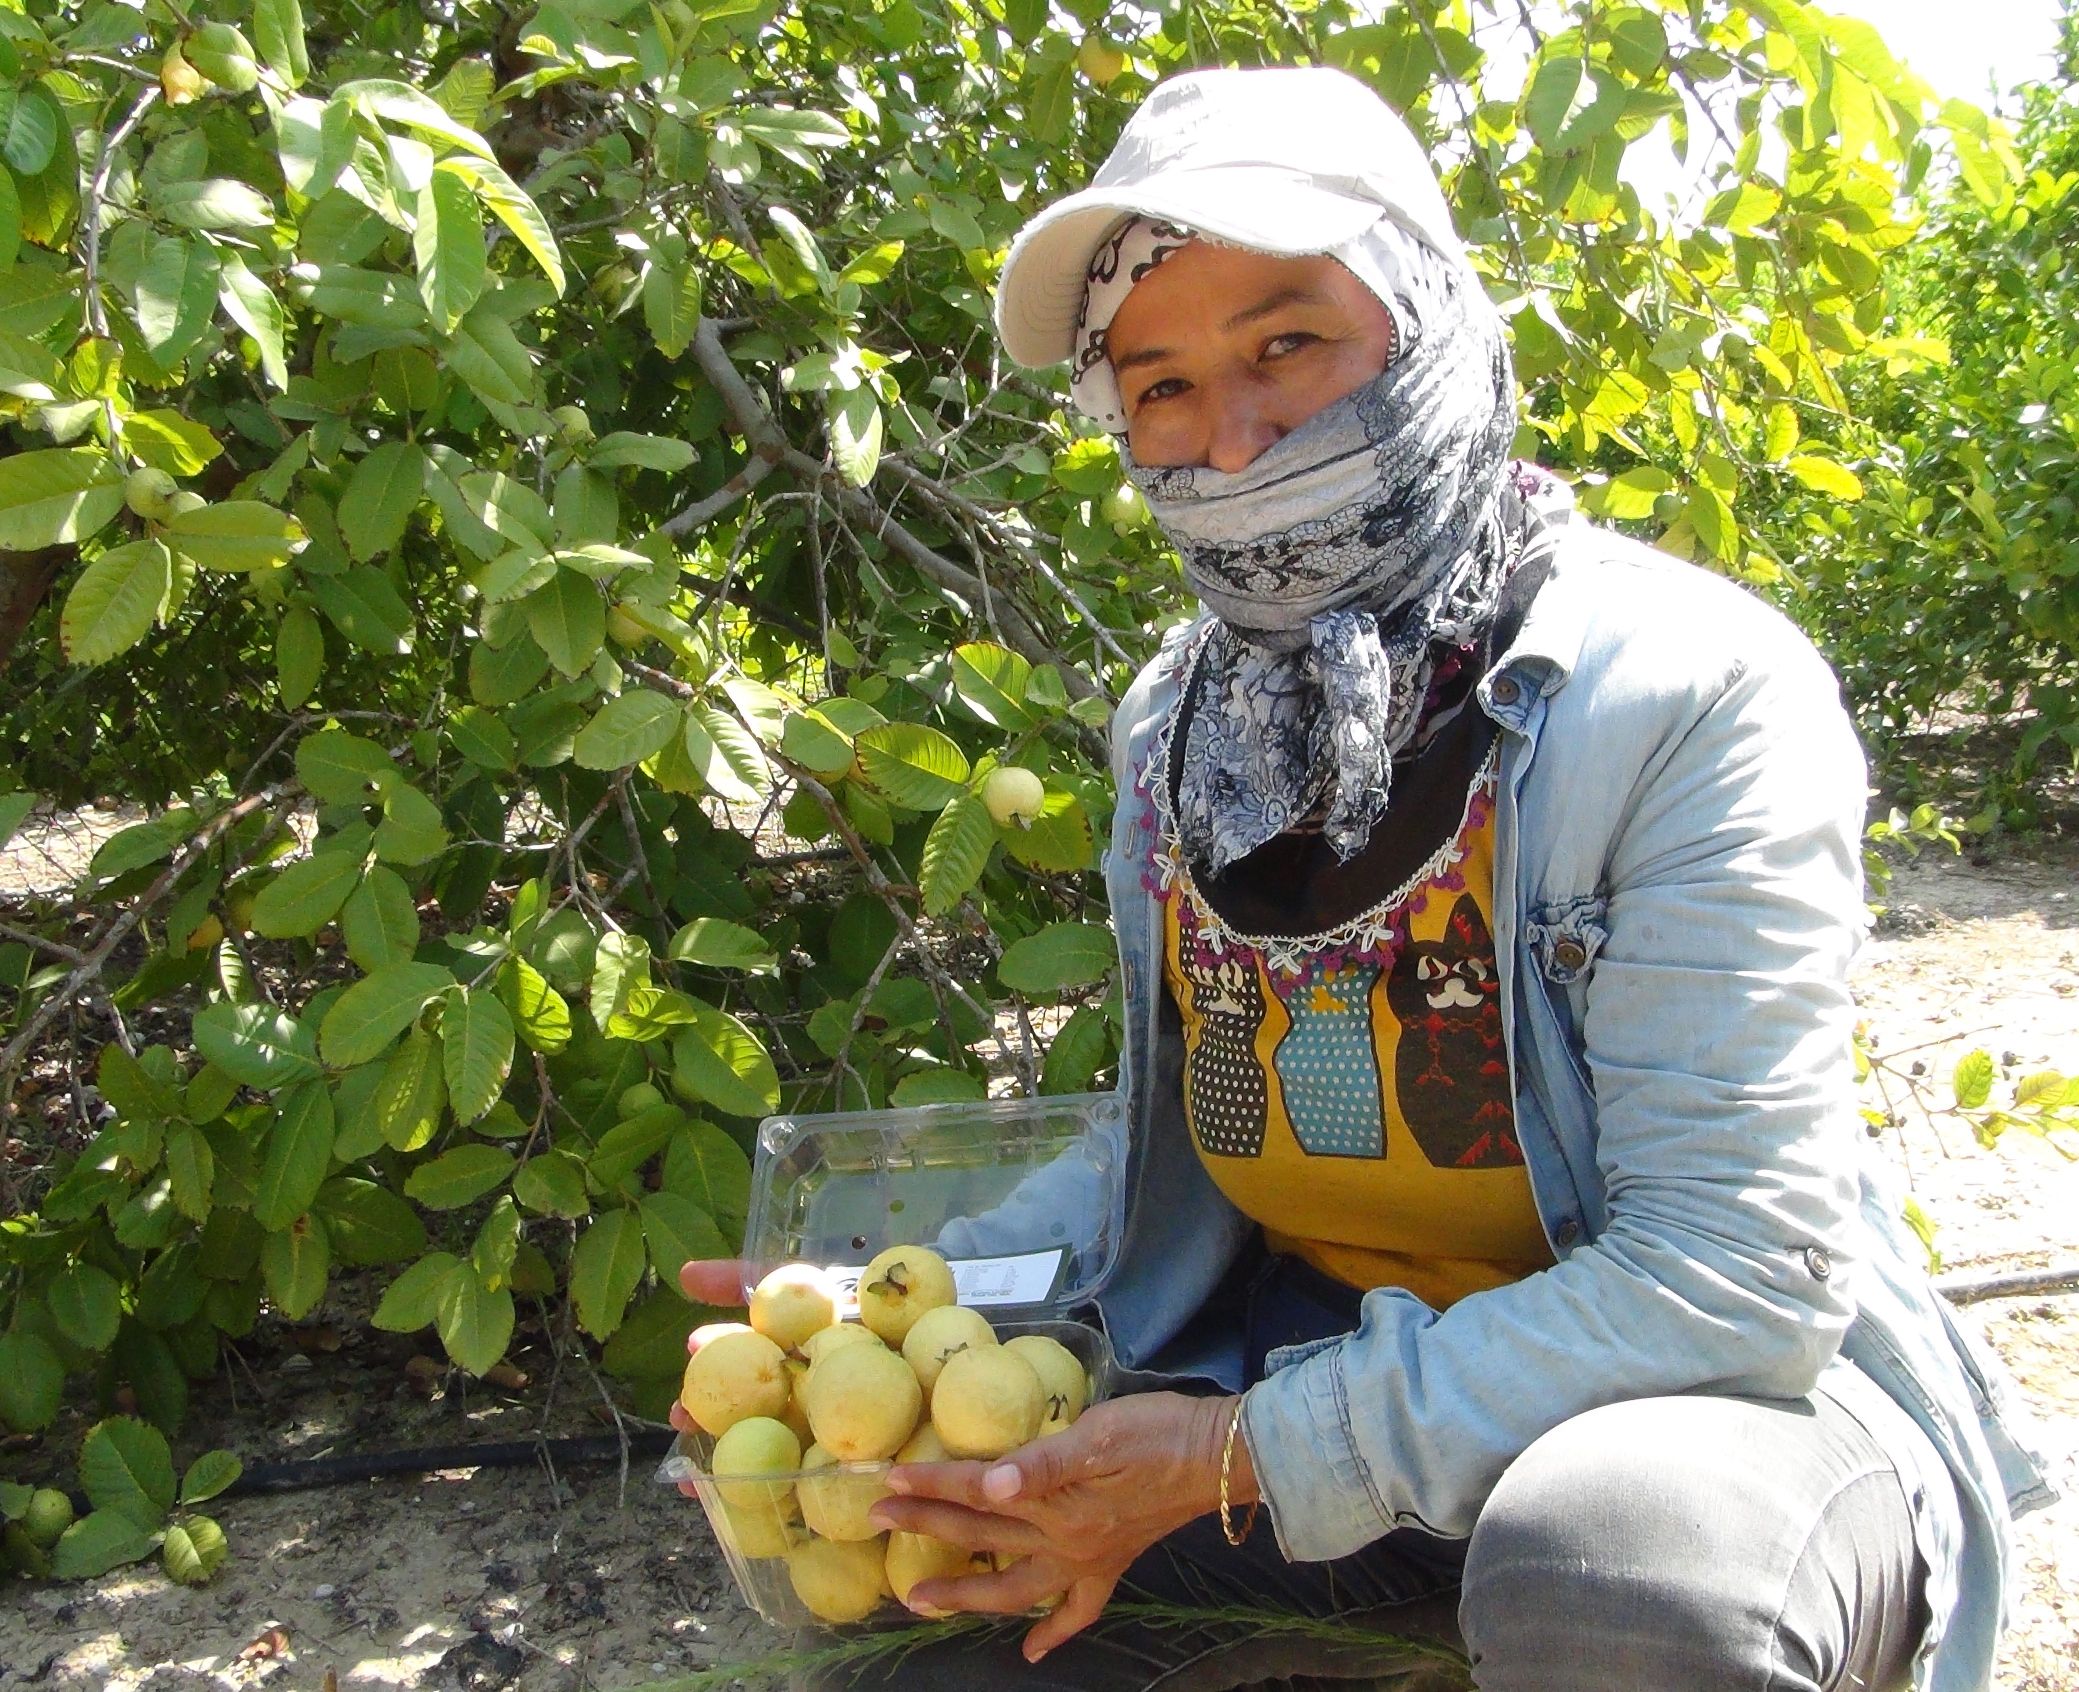 Guavanın kilosu 15 liradan alıcı buluyor.
Birçok tropik ve subtropik meyvenin yetiştiği Silifke’de 10 yıl önce guava fidanlarını toprakla buluşturan ve Türkiye’nin ilk guava üreticisi olan Levent, yaklaşık 12 ton ürün elde etmeyi hedefliyor. Bu ürünlerin hasadına başlayan Levent, meyvenin özelliklerinden ve kullanım alanlarından söz etti.